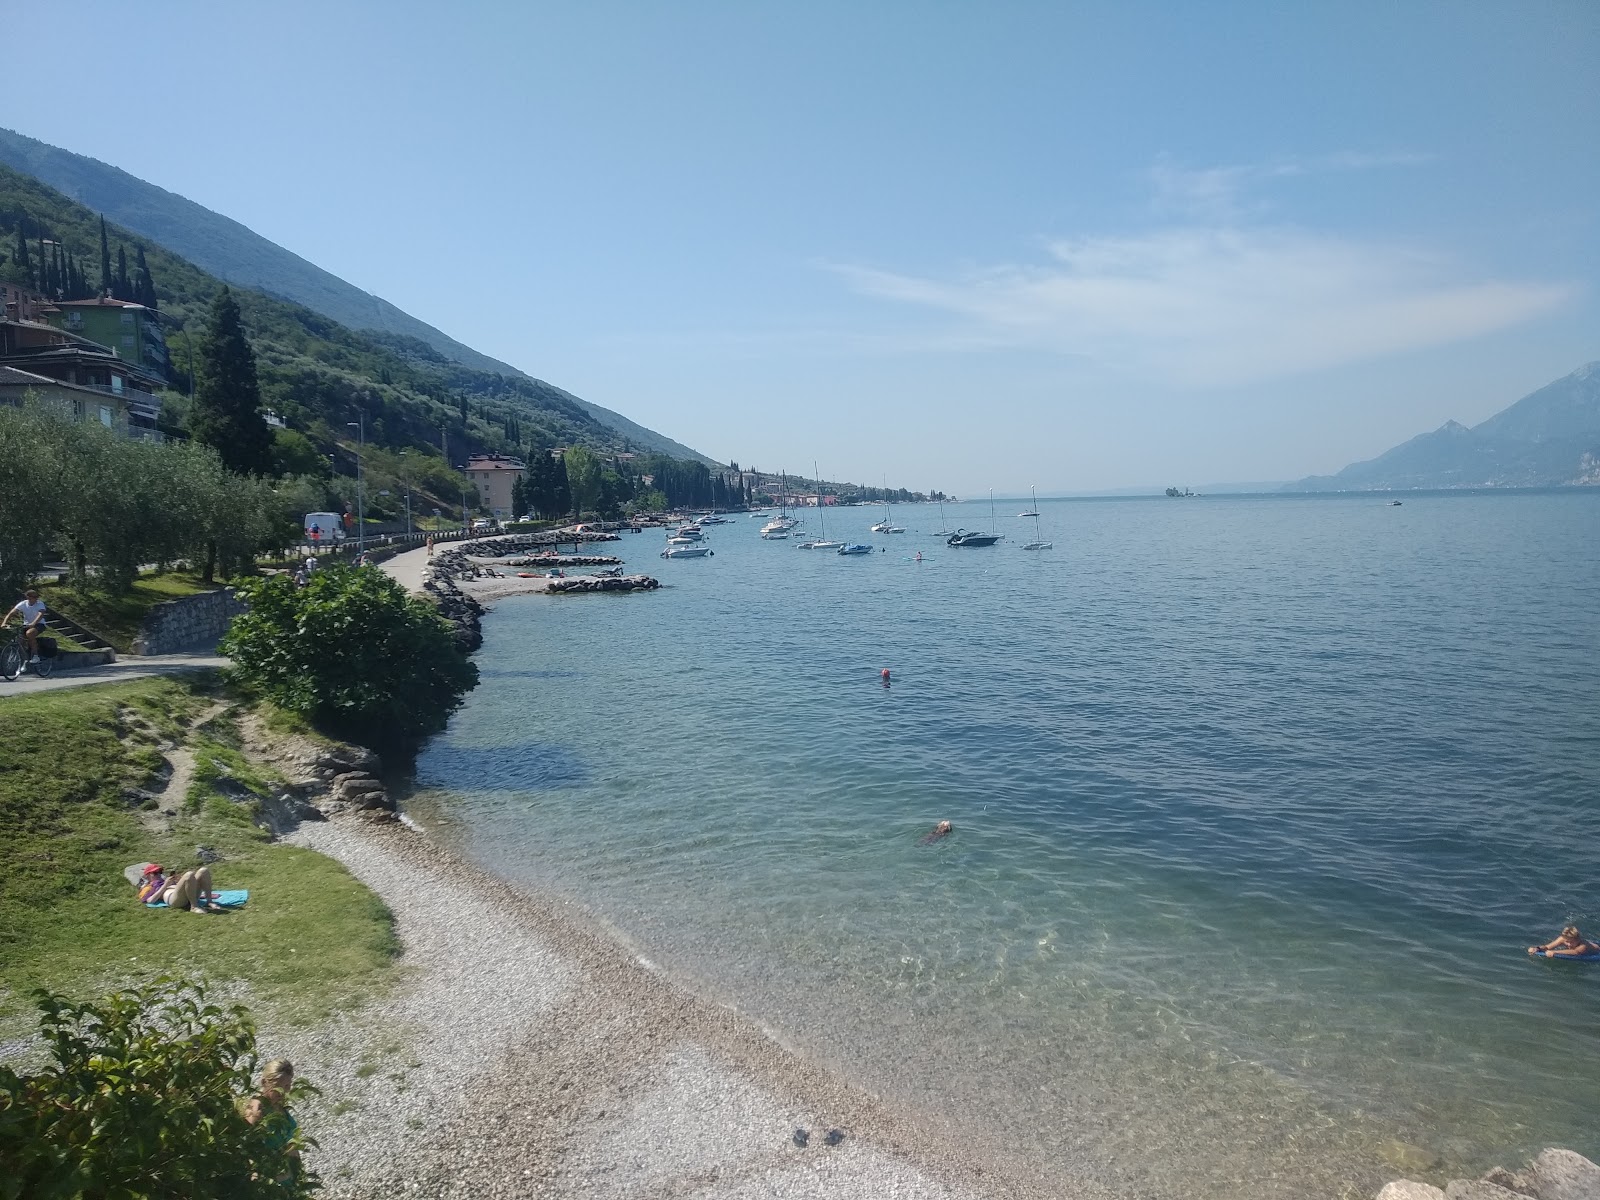 Spiaggia val di sogno'in fotoğrafı - rahatlamayı sevenler arasında popüler bir yer